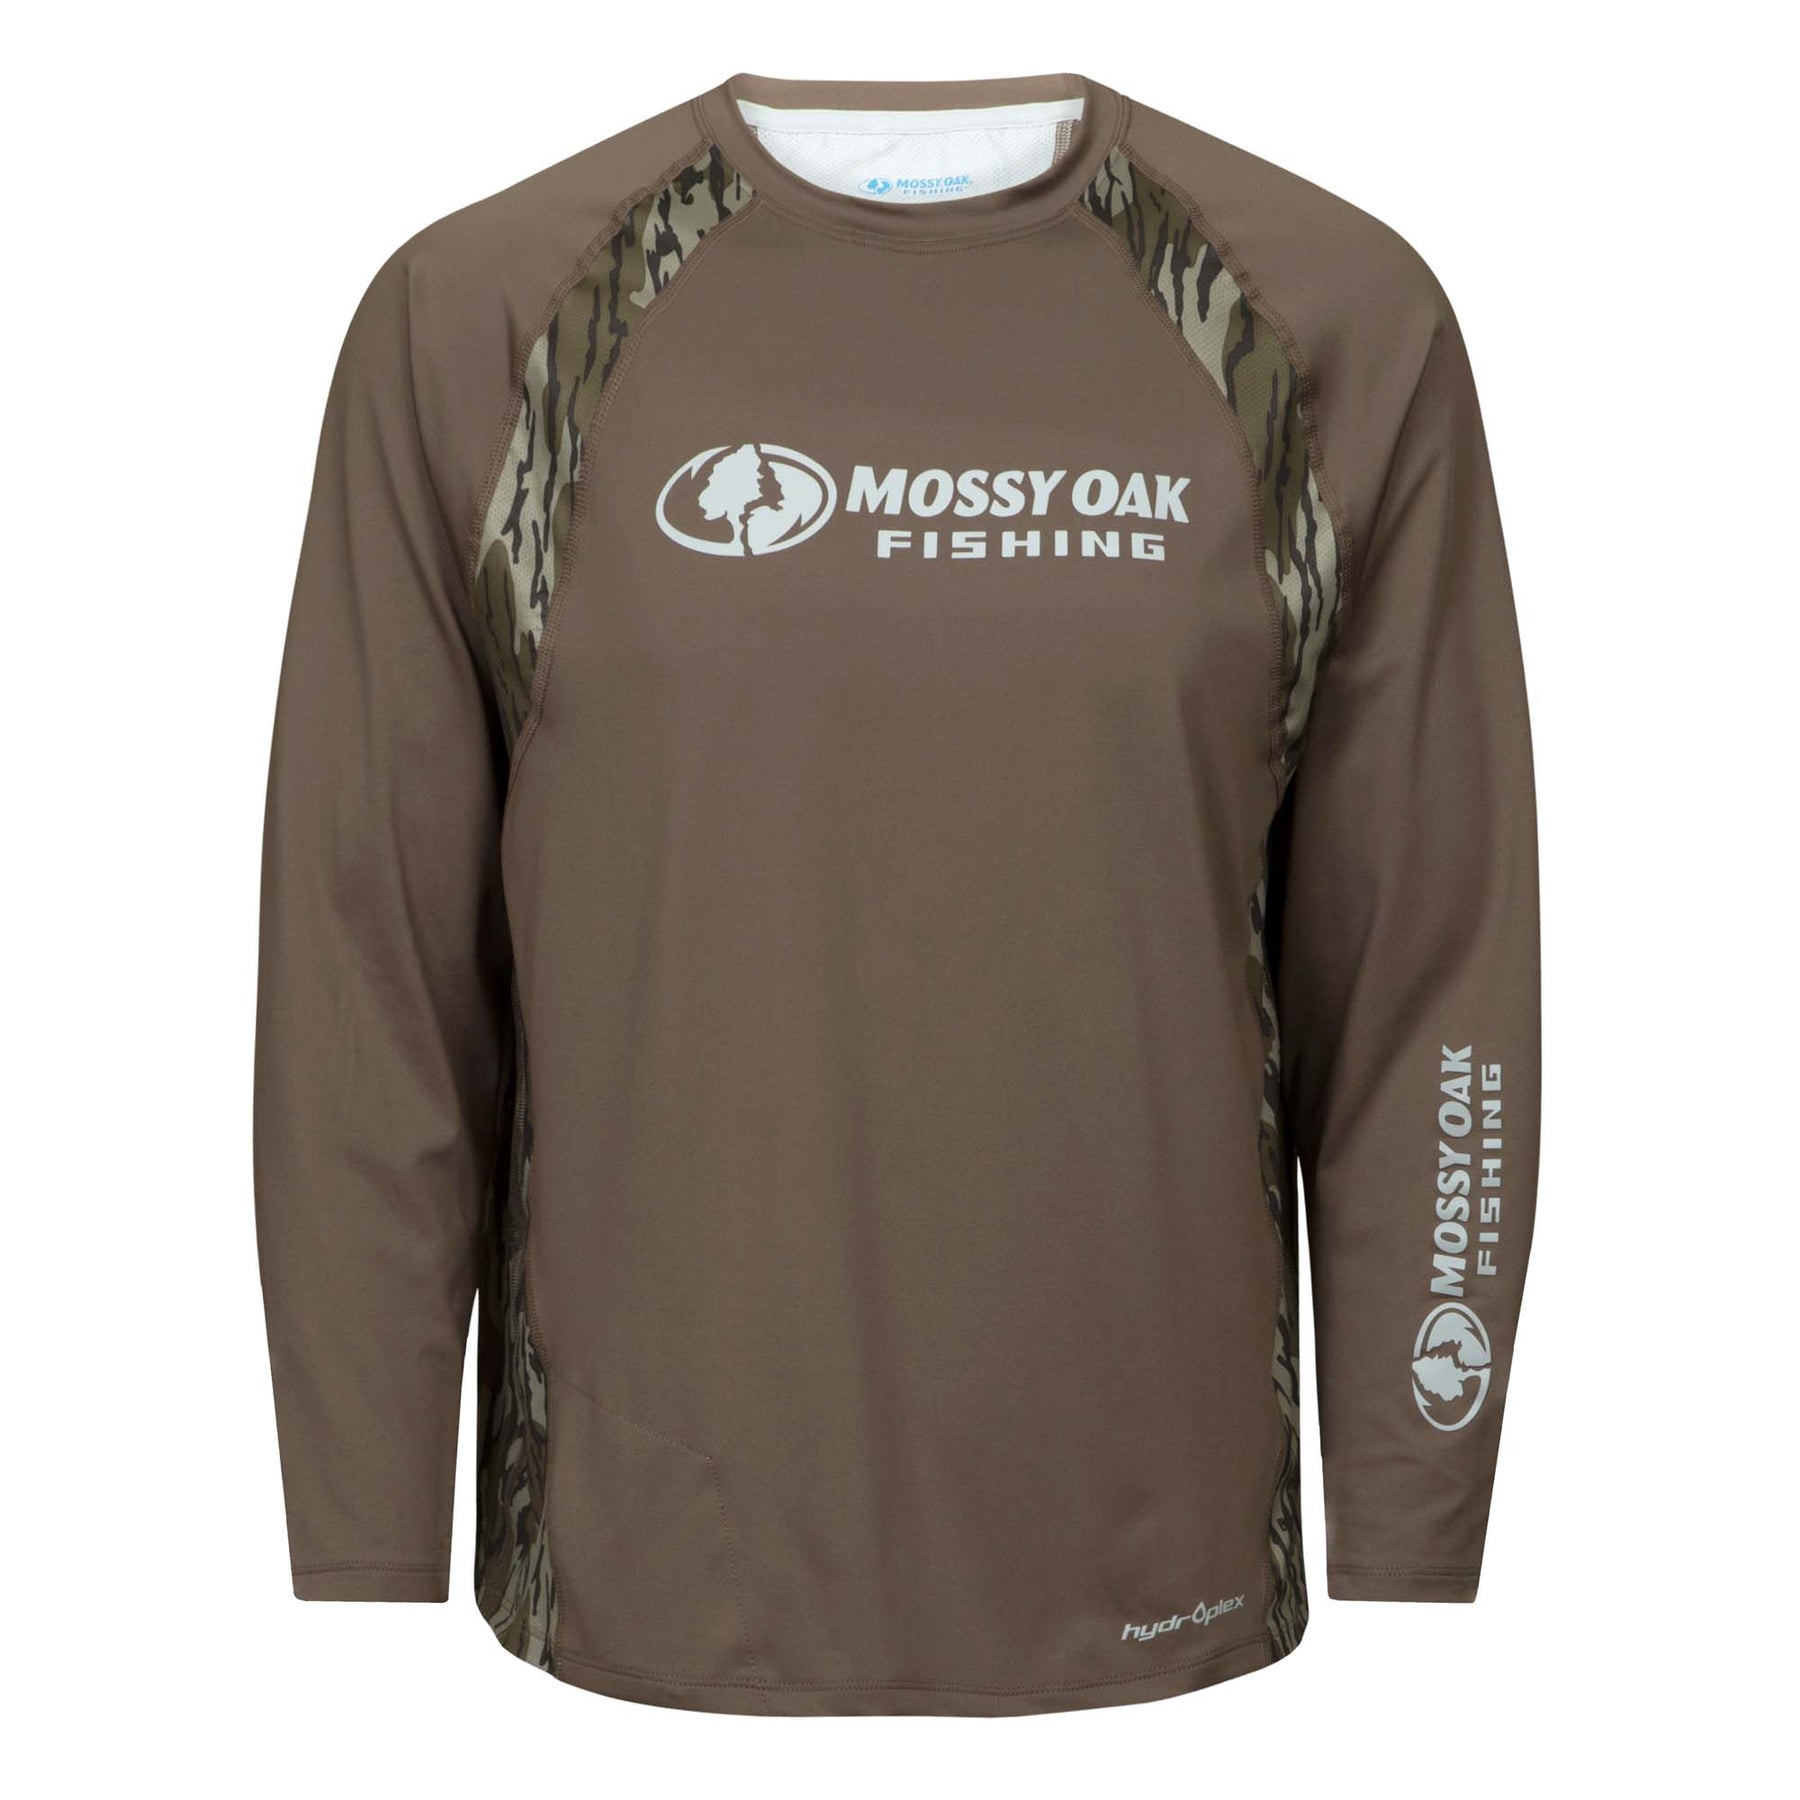 Mossy Oak Fishing shirt XL, Lime Green